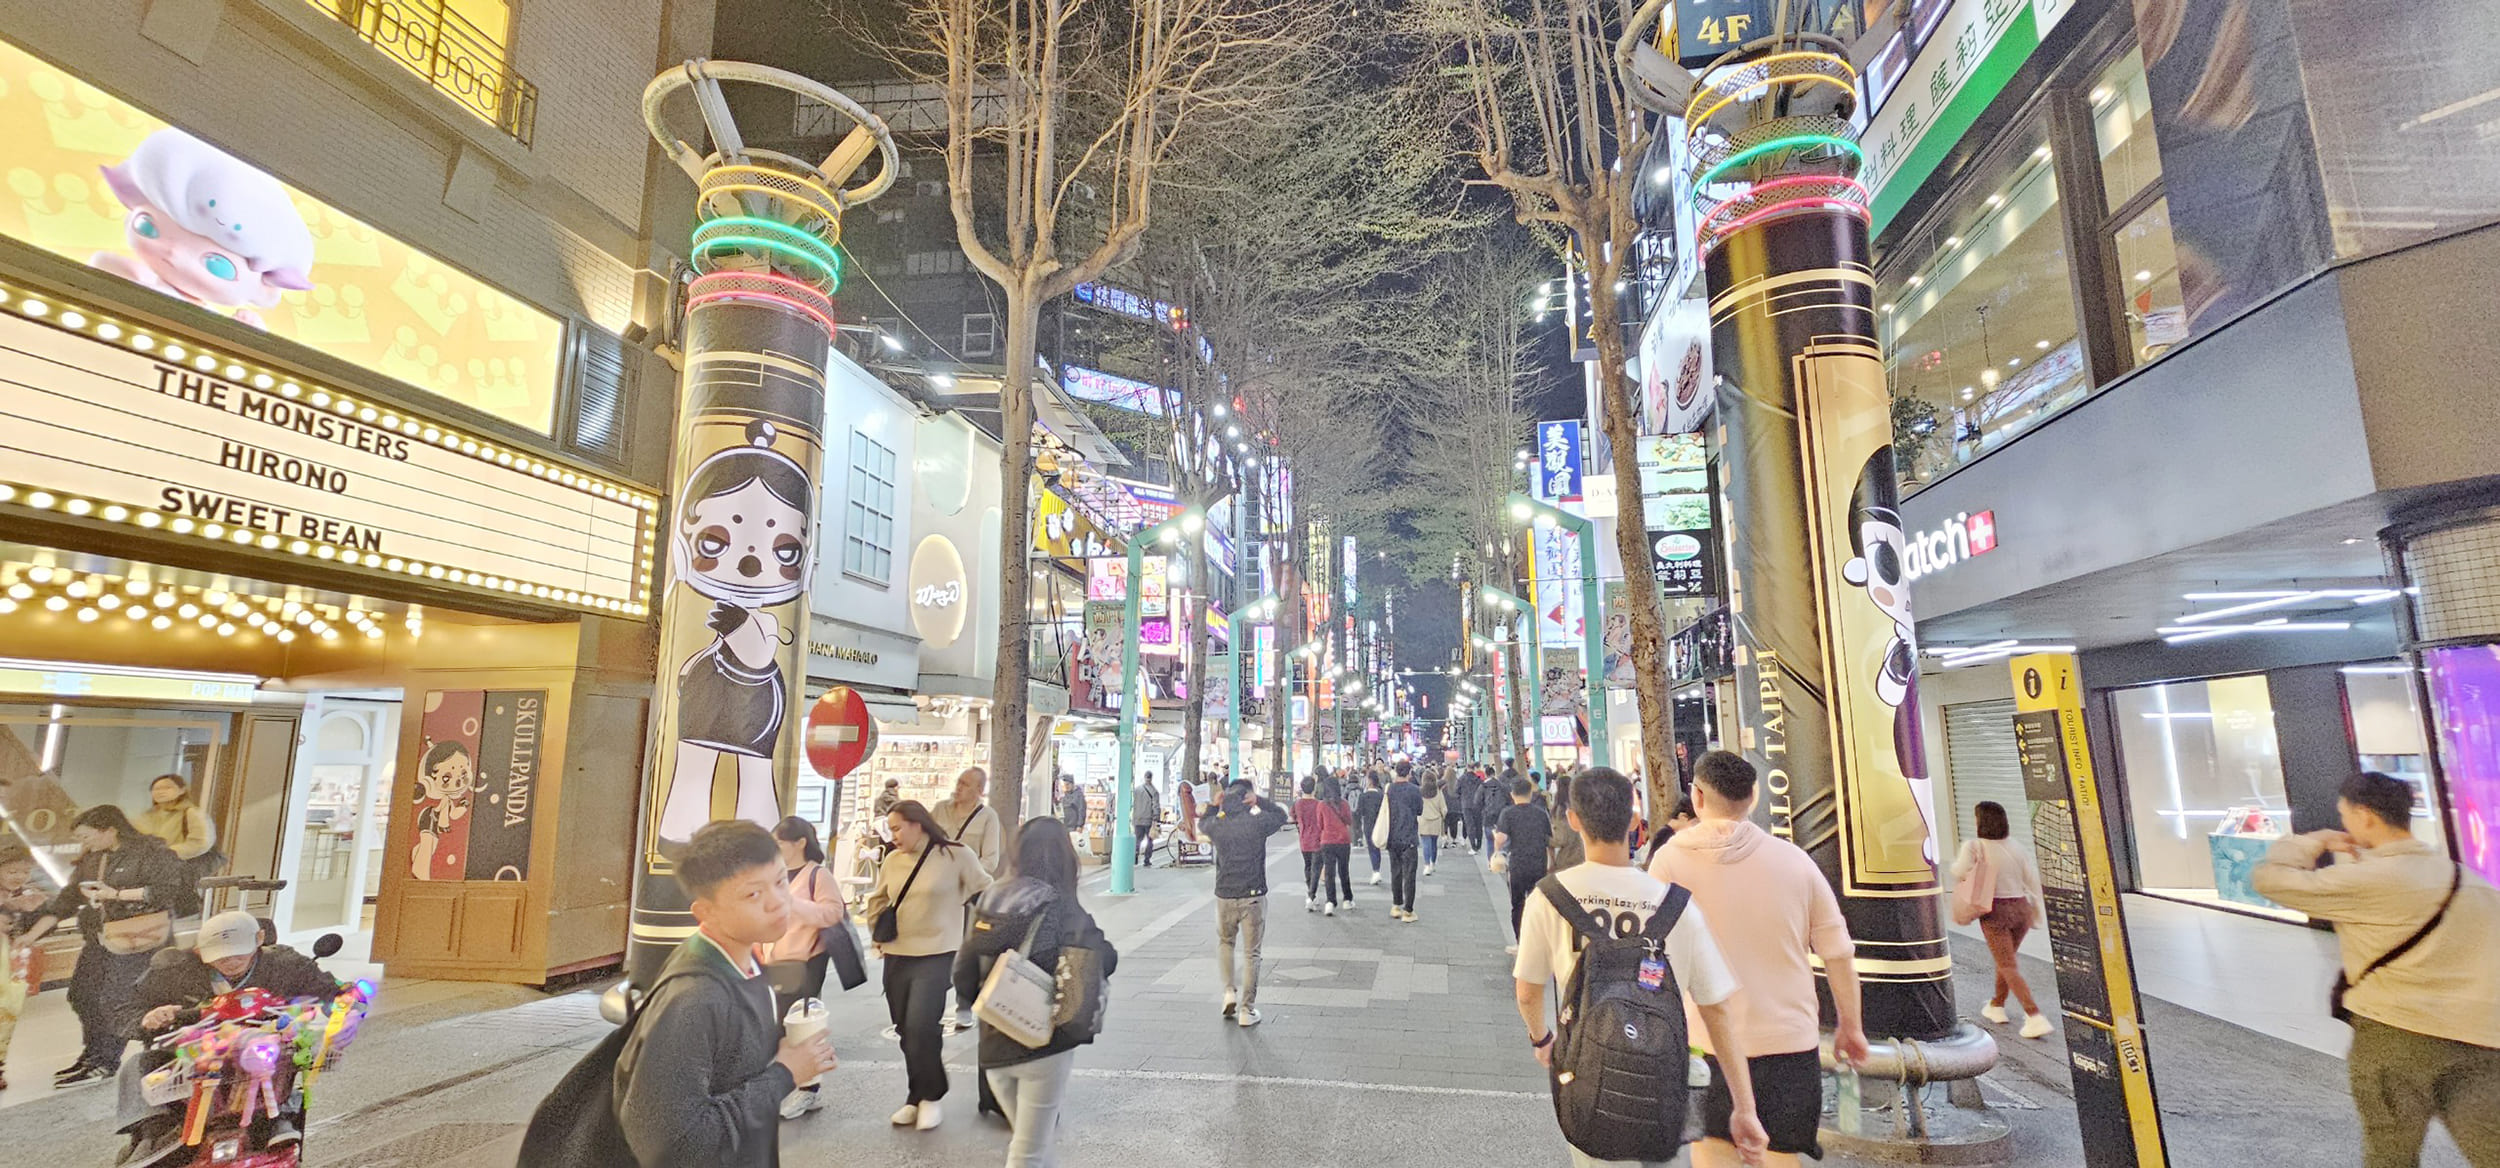 Bên cạnh các điểm đến trong nước, Đài Loan (Trung Quốc) được nhiều du khách ưa thích khi du lịch nước ngoài (ảnh: Đ.M).